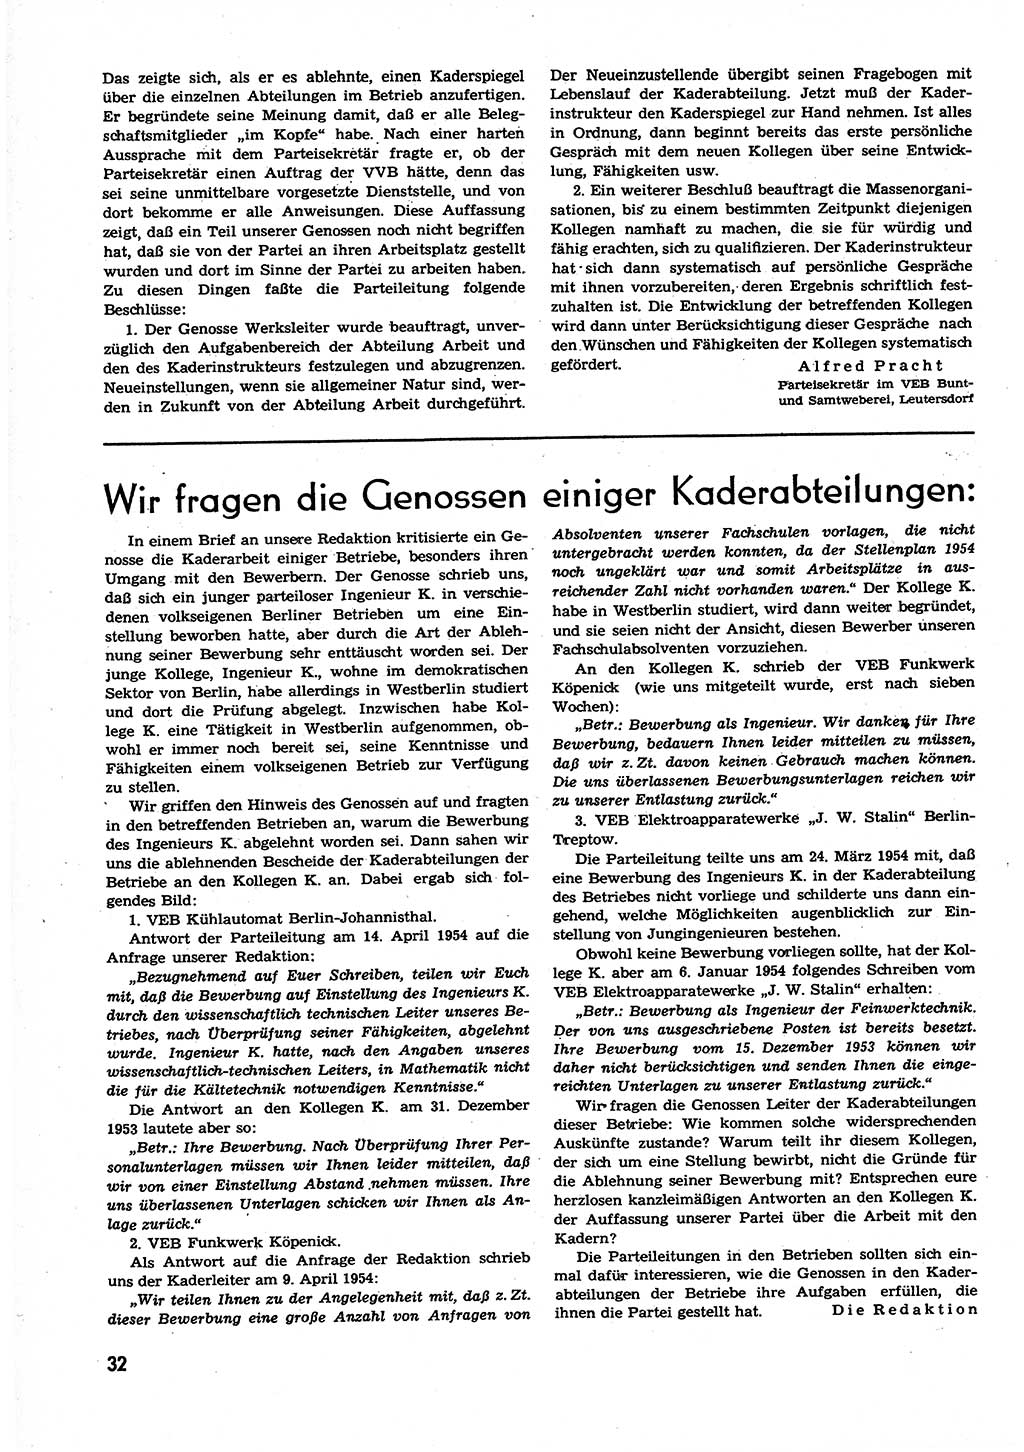 Neuer Weg (NW), Organ des Zentralkomitees (ZK) der SED (Sozialistische Einheitspartei Deutschlands) für alle Parteiarbeiter, 9. Jahrgang [Deutsche Demokratische Republik (DDR)] 1954, Heft 11/32 (NW ZK SED DDR 1954, H. 11/32)